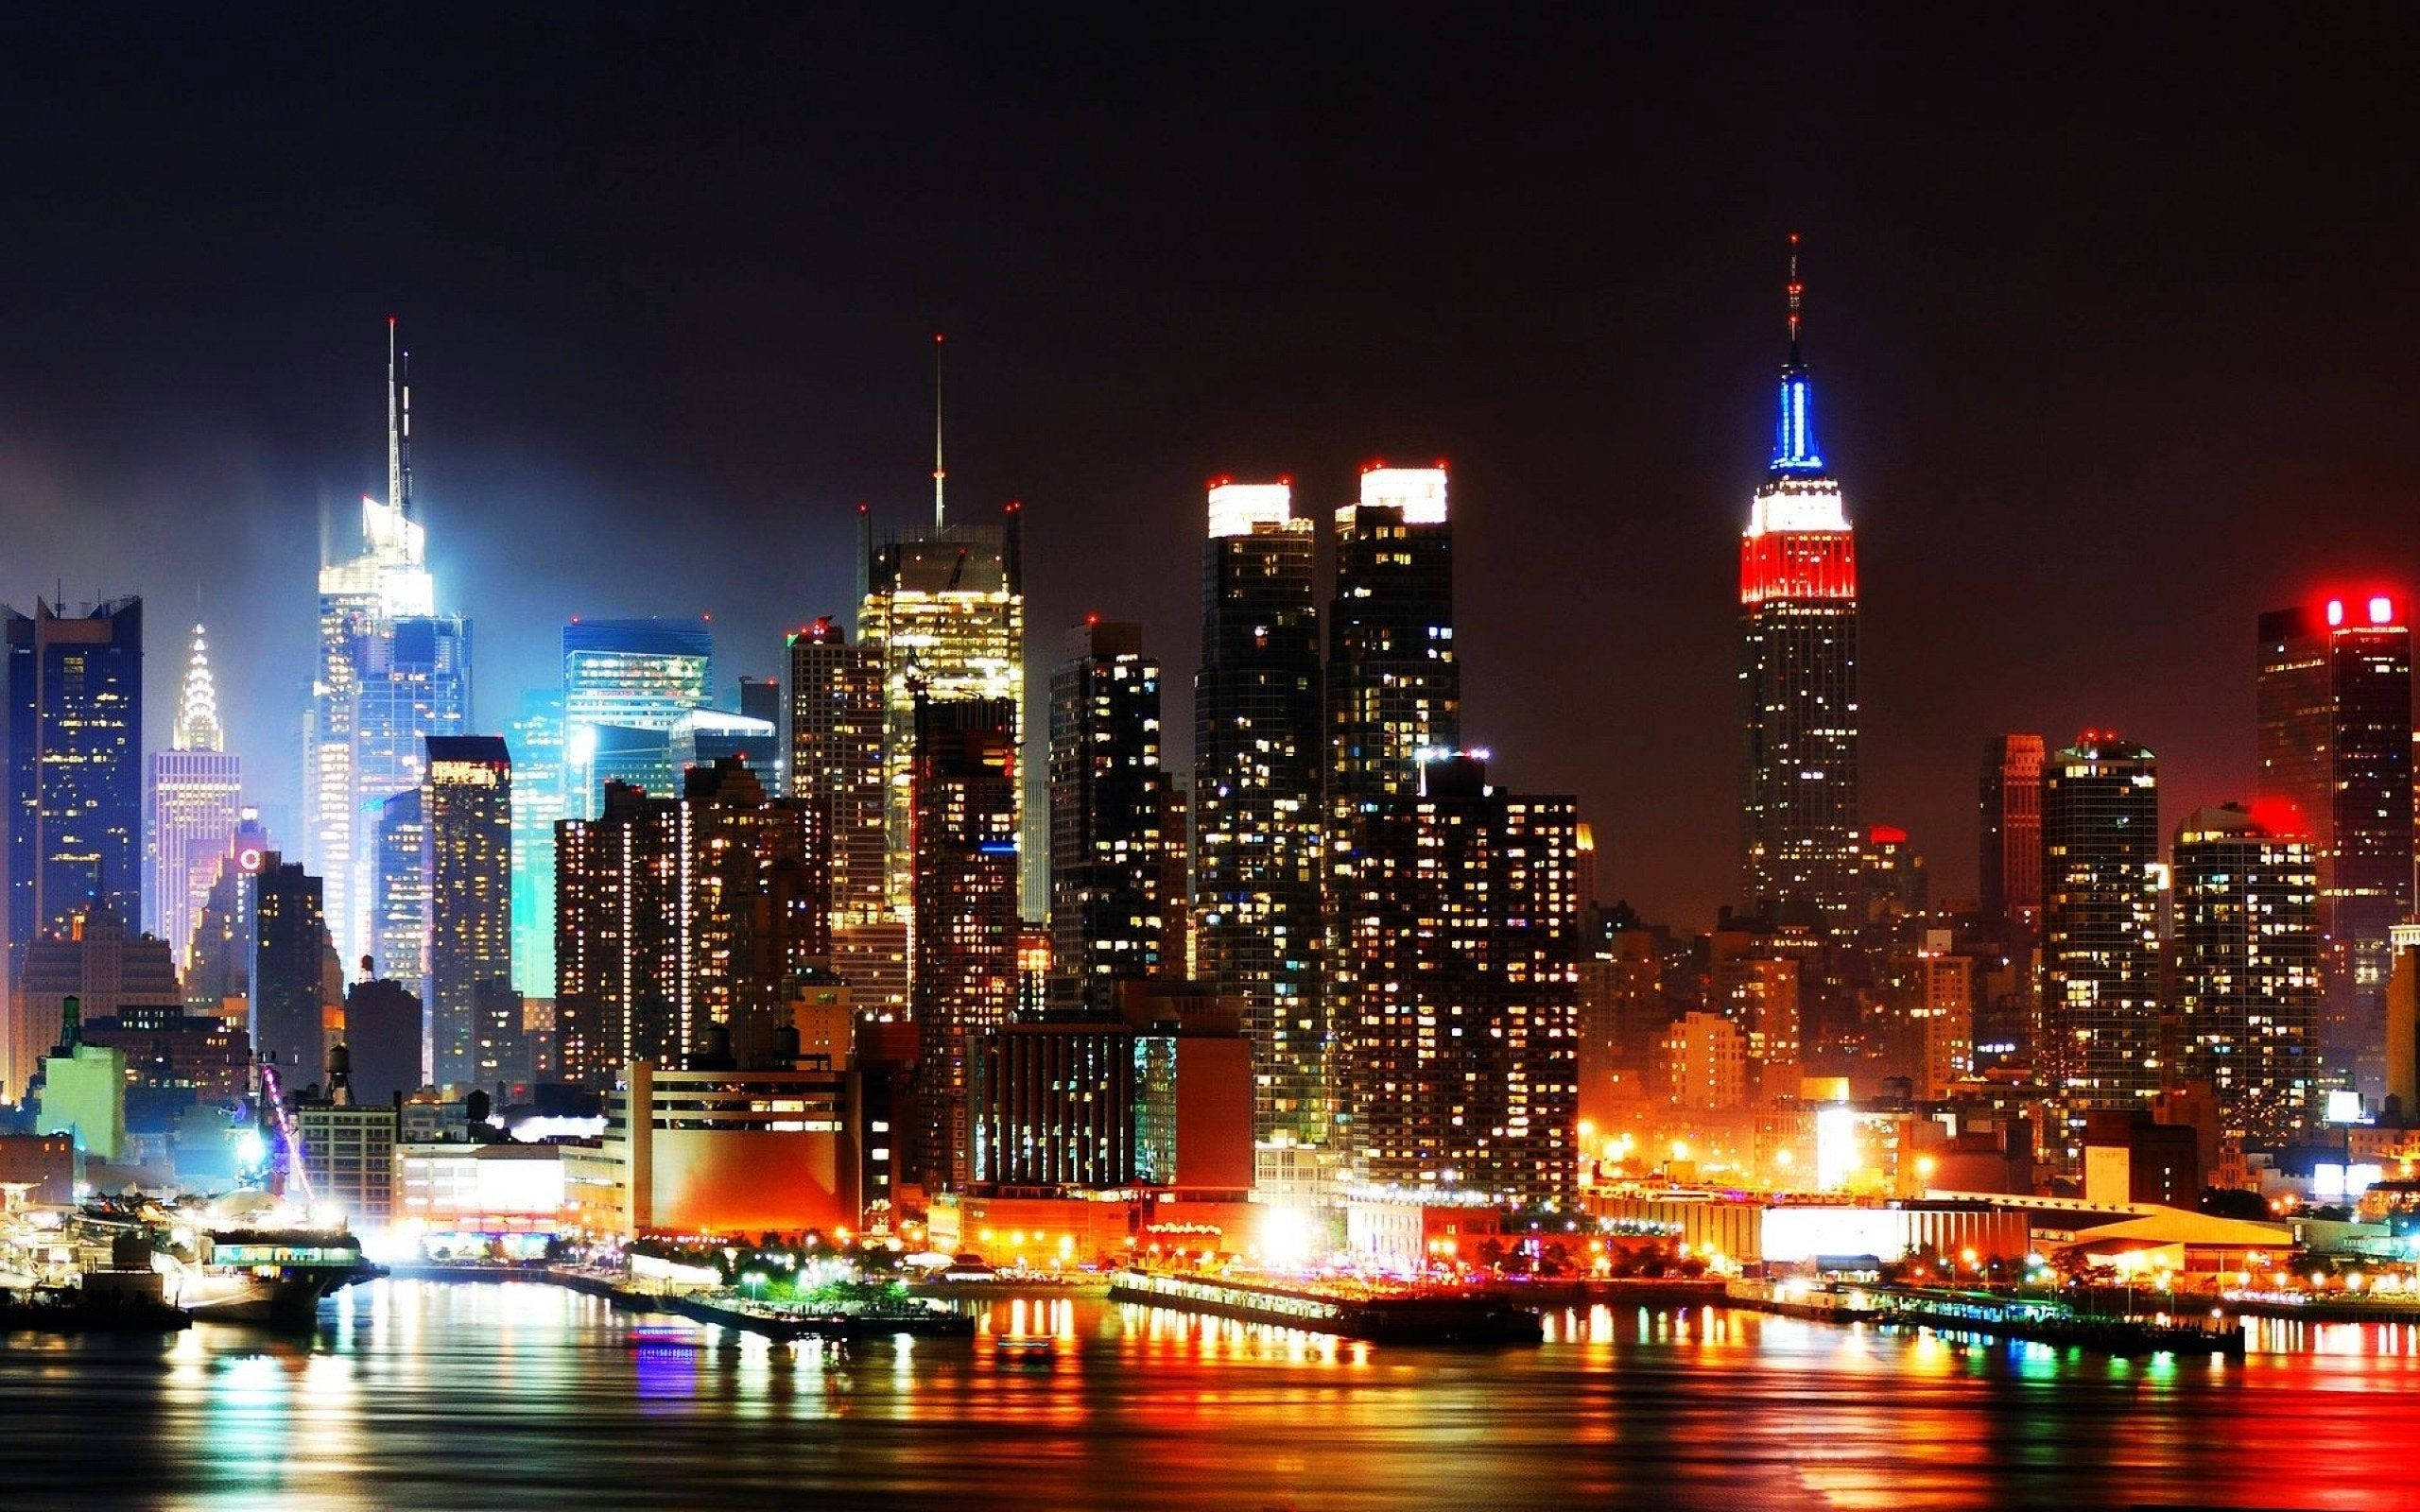 Красивые фотки городов. Нью Йорк Скайлайн. Нью Йорк Скайлайн ночь. Мегаполис Нью-Йорк. Ночной Нью-Йорк Манхэттен.